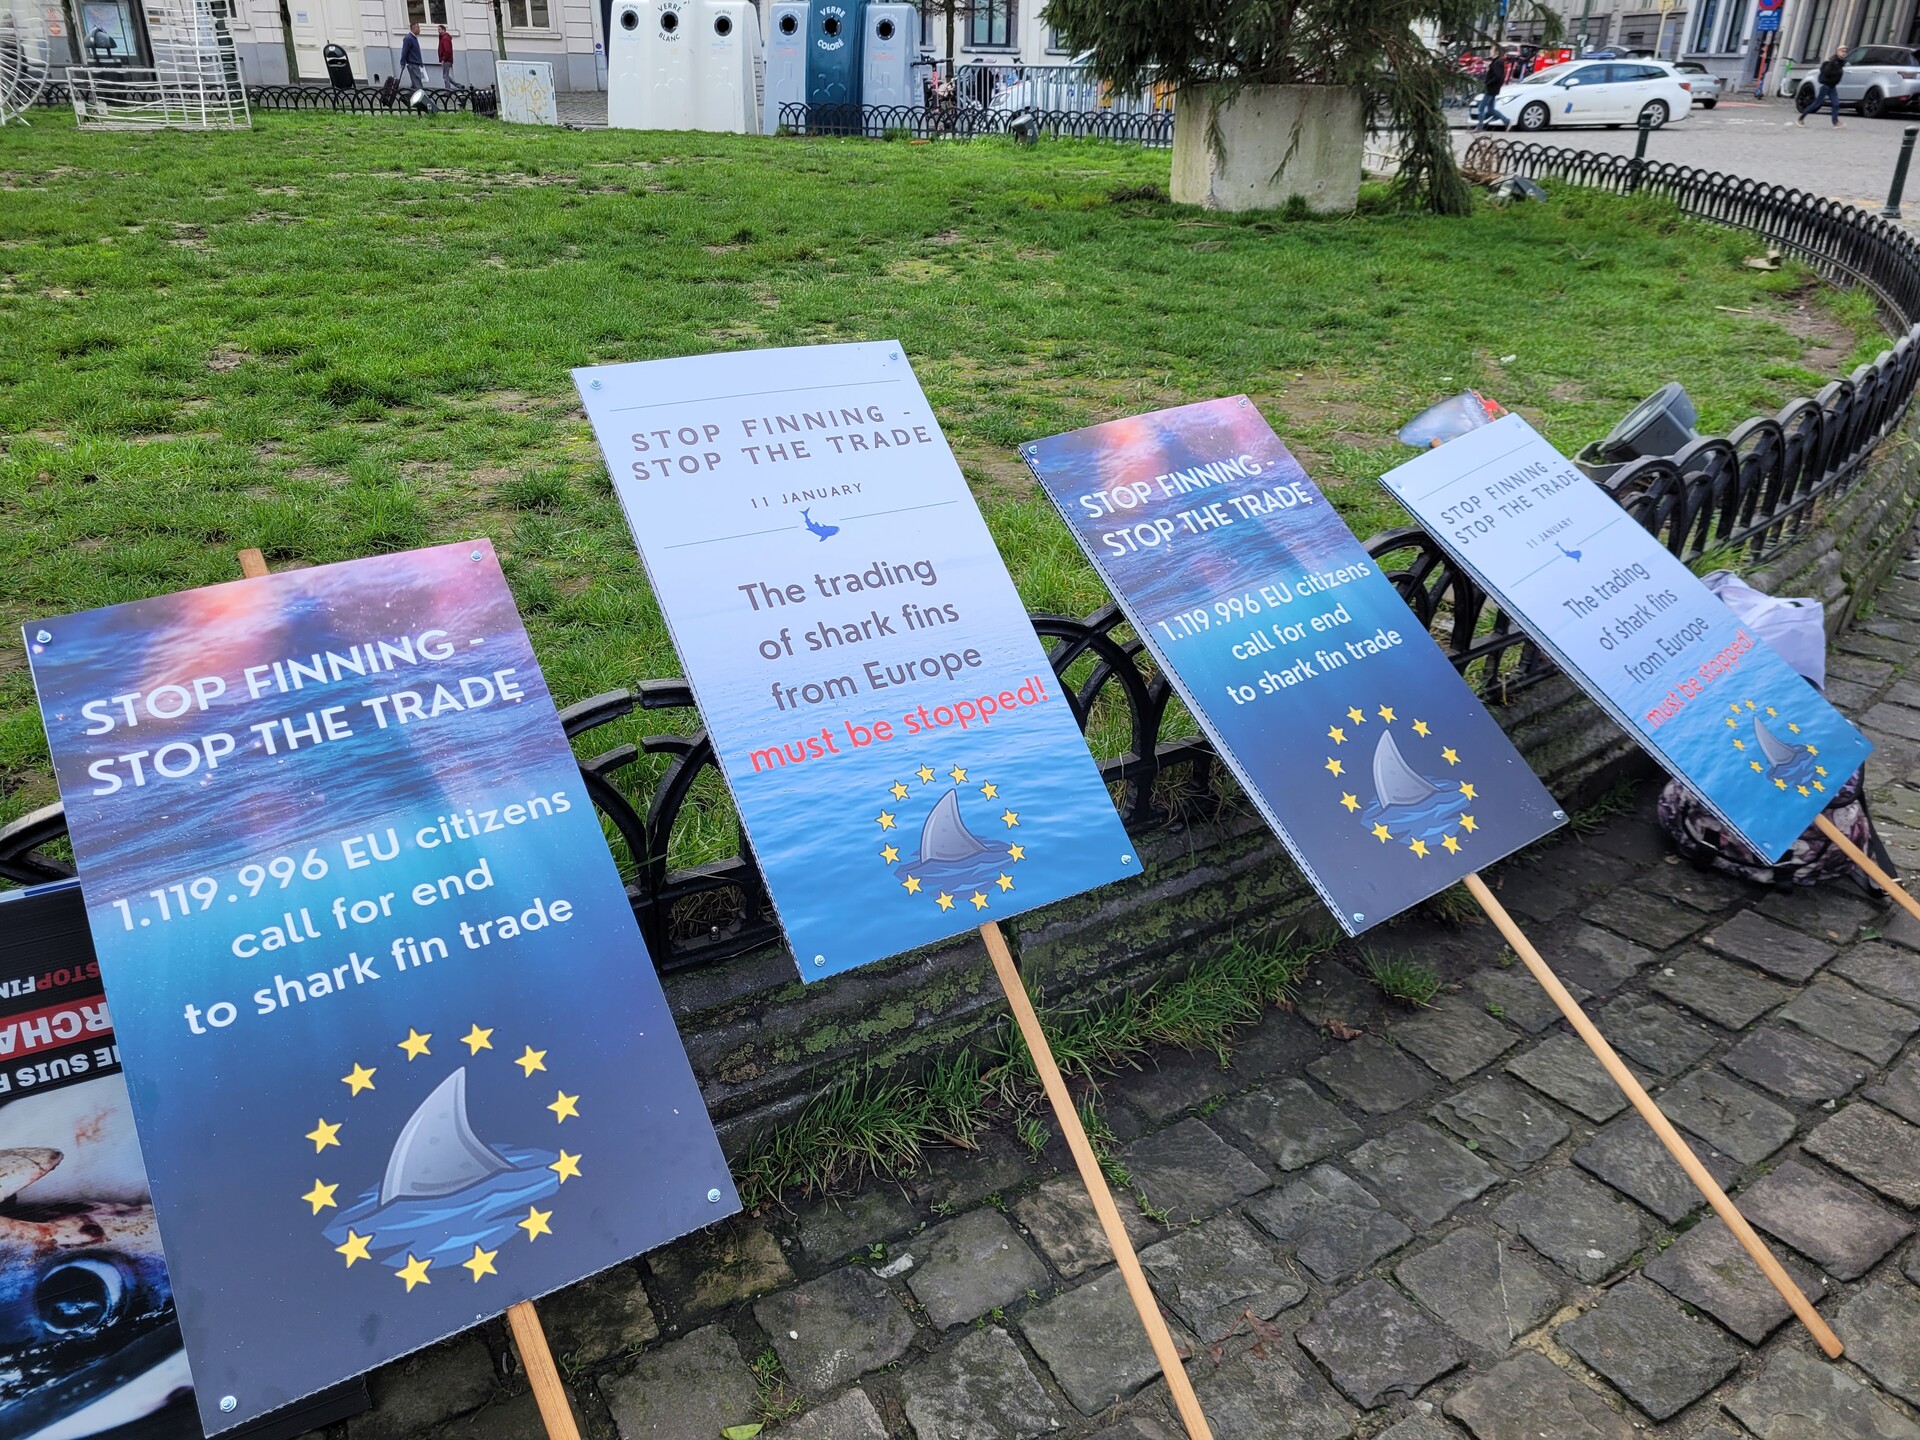 Mehrere Schilder mit der Aufschrift "Stop Finning - Stop the Trade" und zusätzlichen, knackigen Sprüchen und Fakten. 